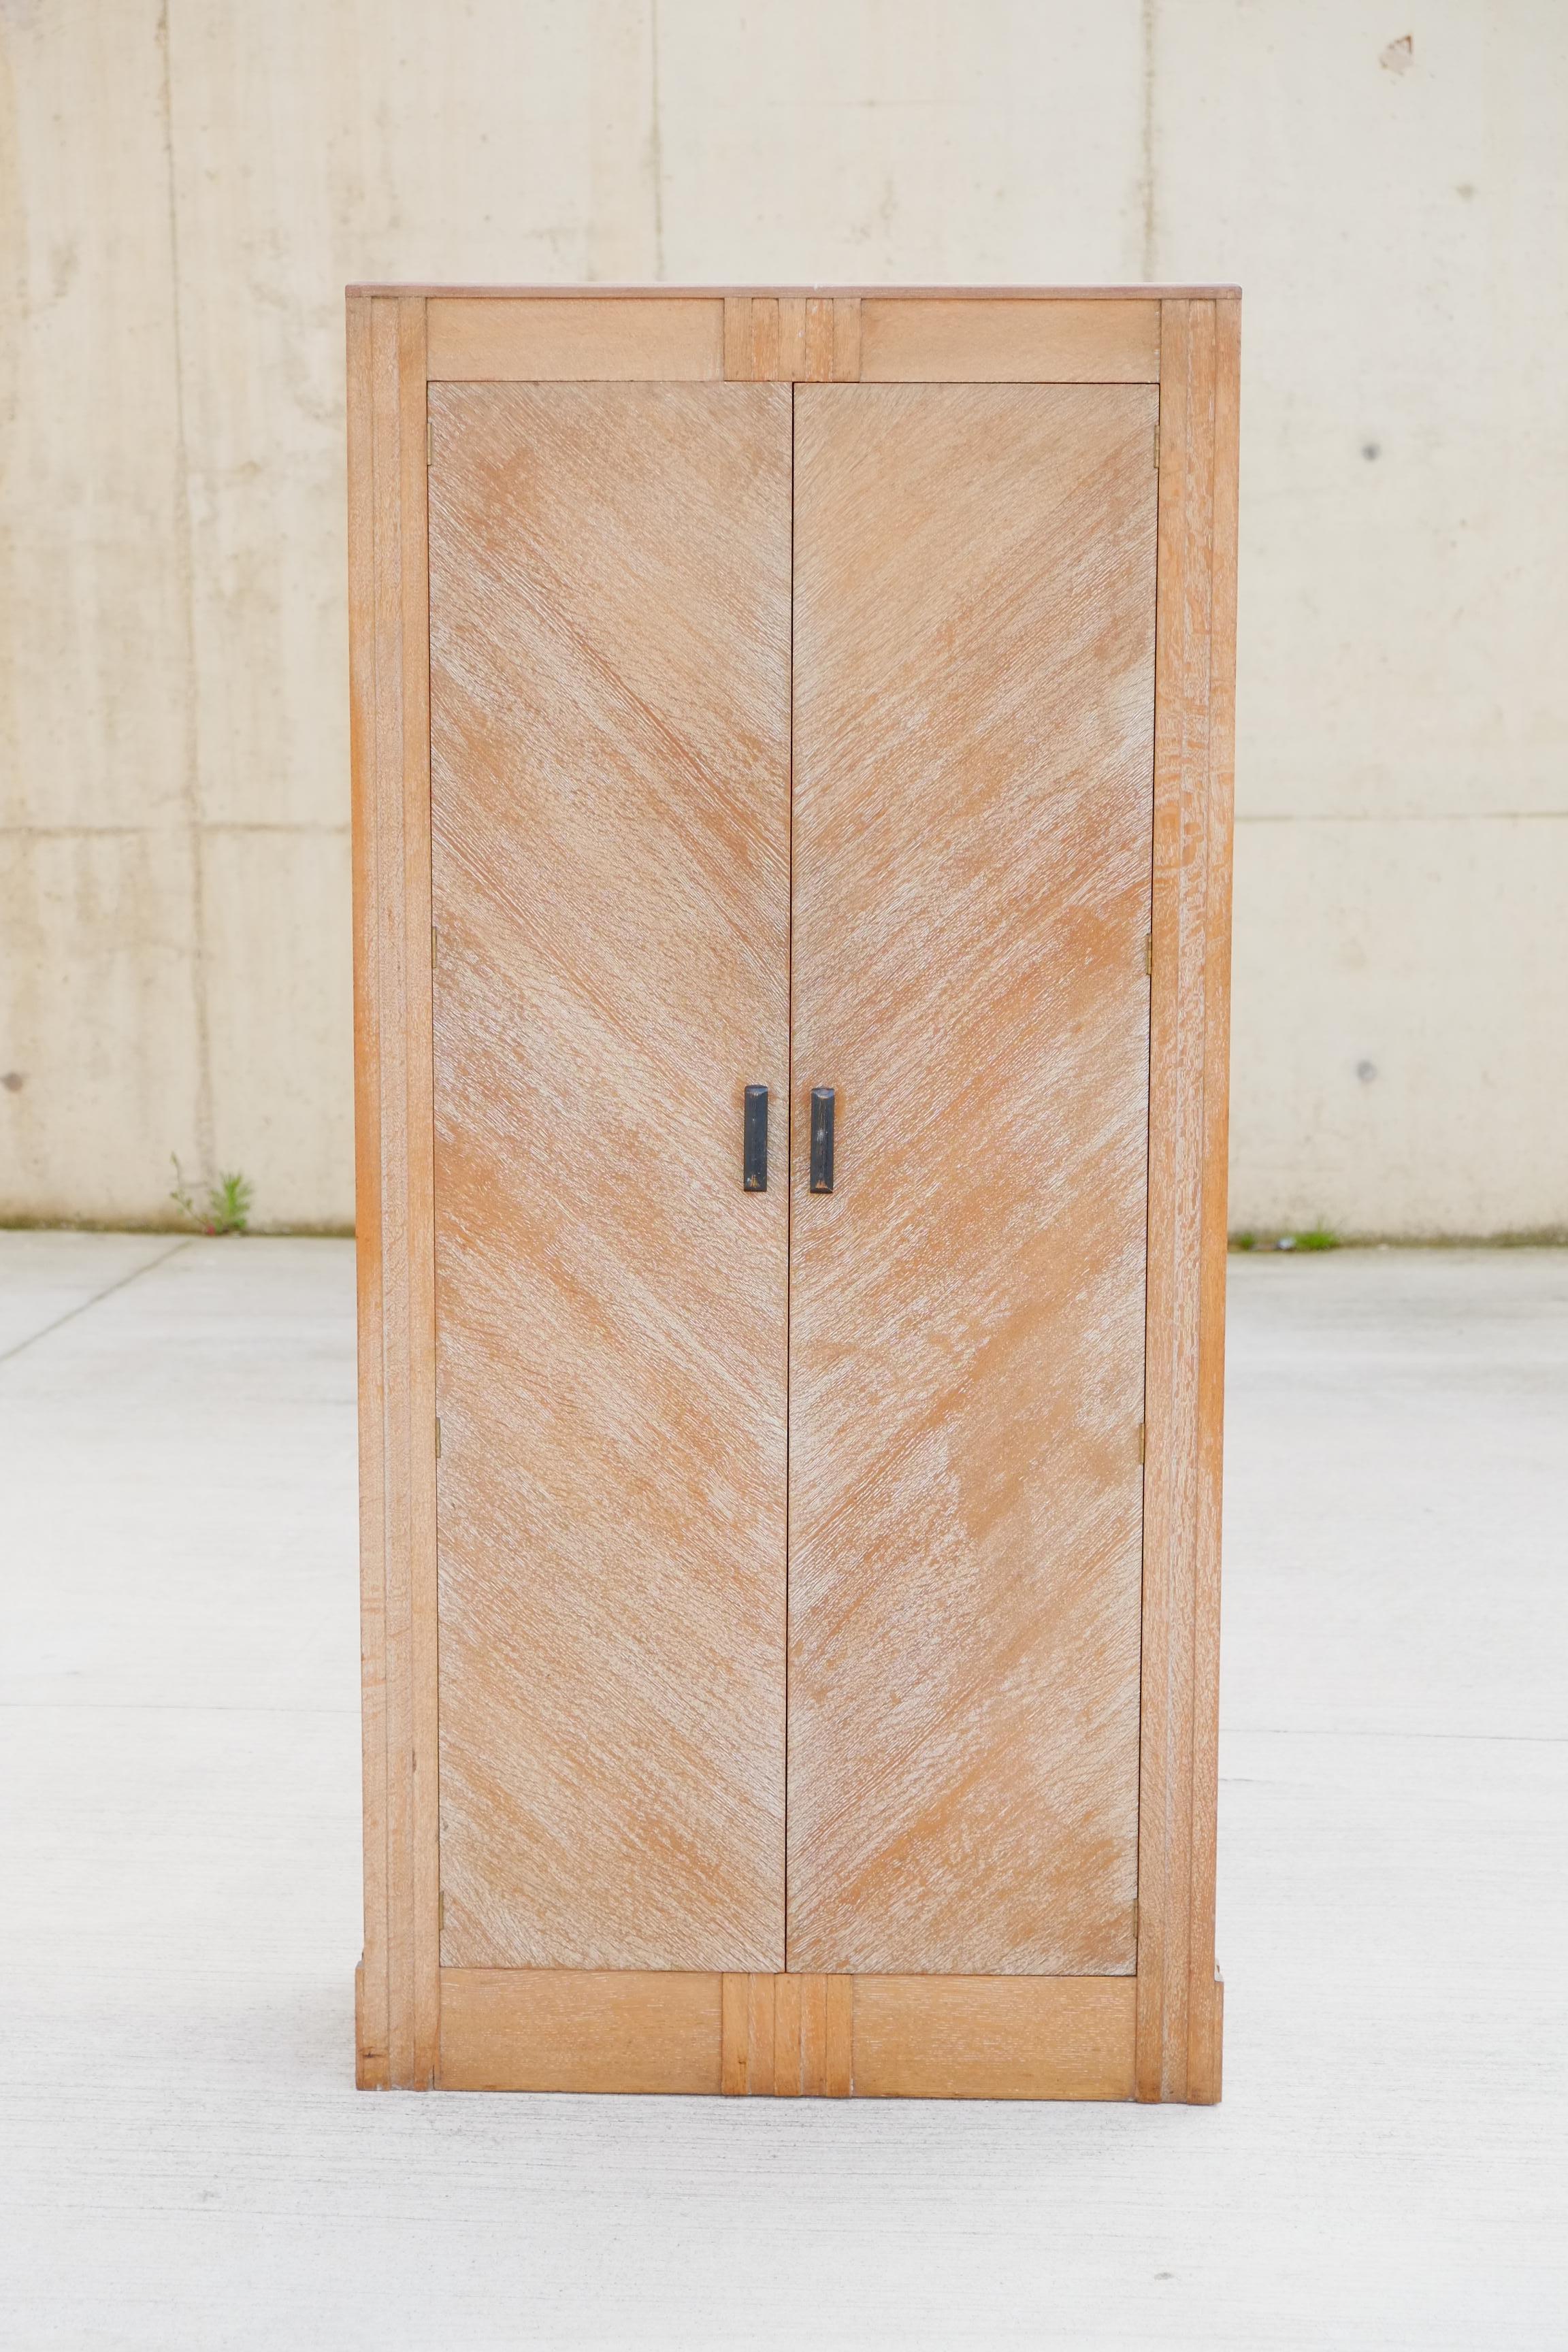 Atemberaubender Art-Déco-Schrank der englischen Möbelschreinerei Hypnos. Der Schrank ist aus massiver Eiche gefertigt und mit Kalkwachs lackiert. Die Eichenholztüren bestechen durch ihr diagonales Design. Subtile Art-Déco-Dekoration im gesamten